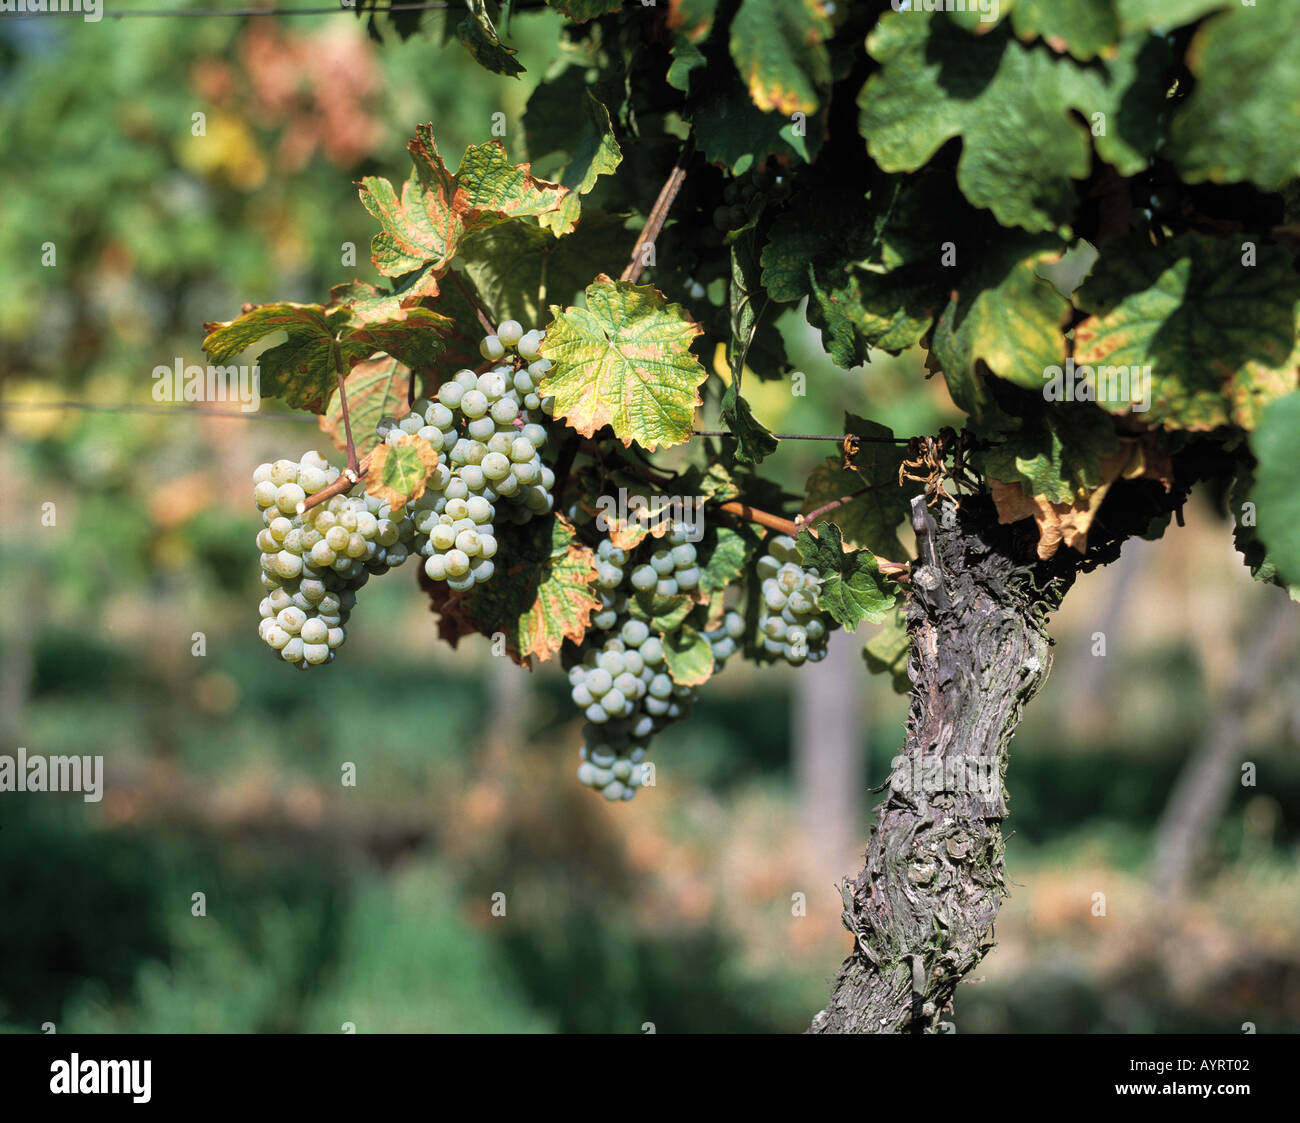 vine, white bunches of grapes, white vine Stock Photo